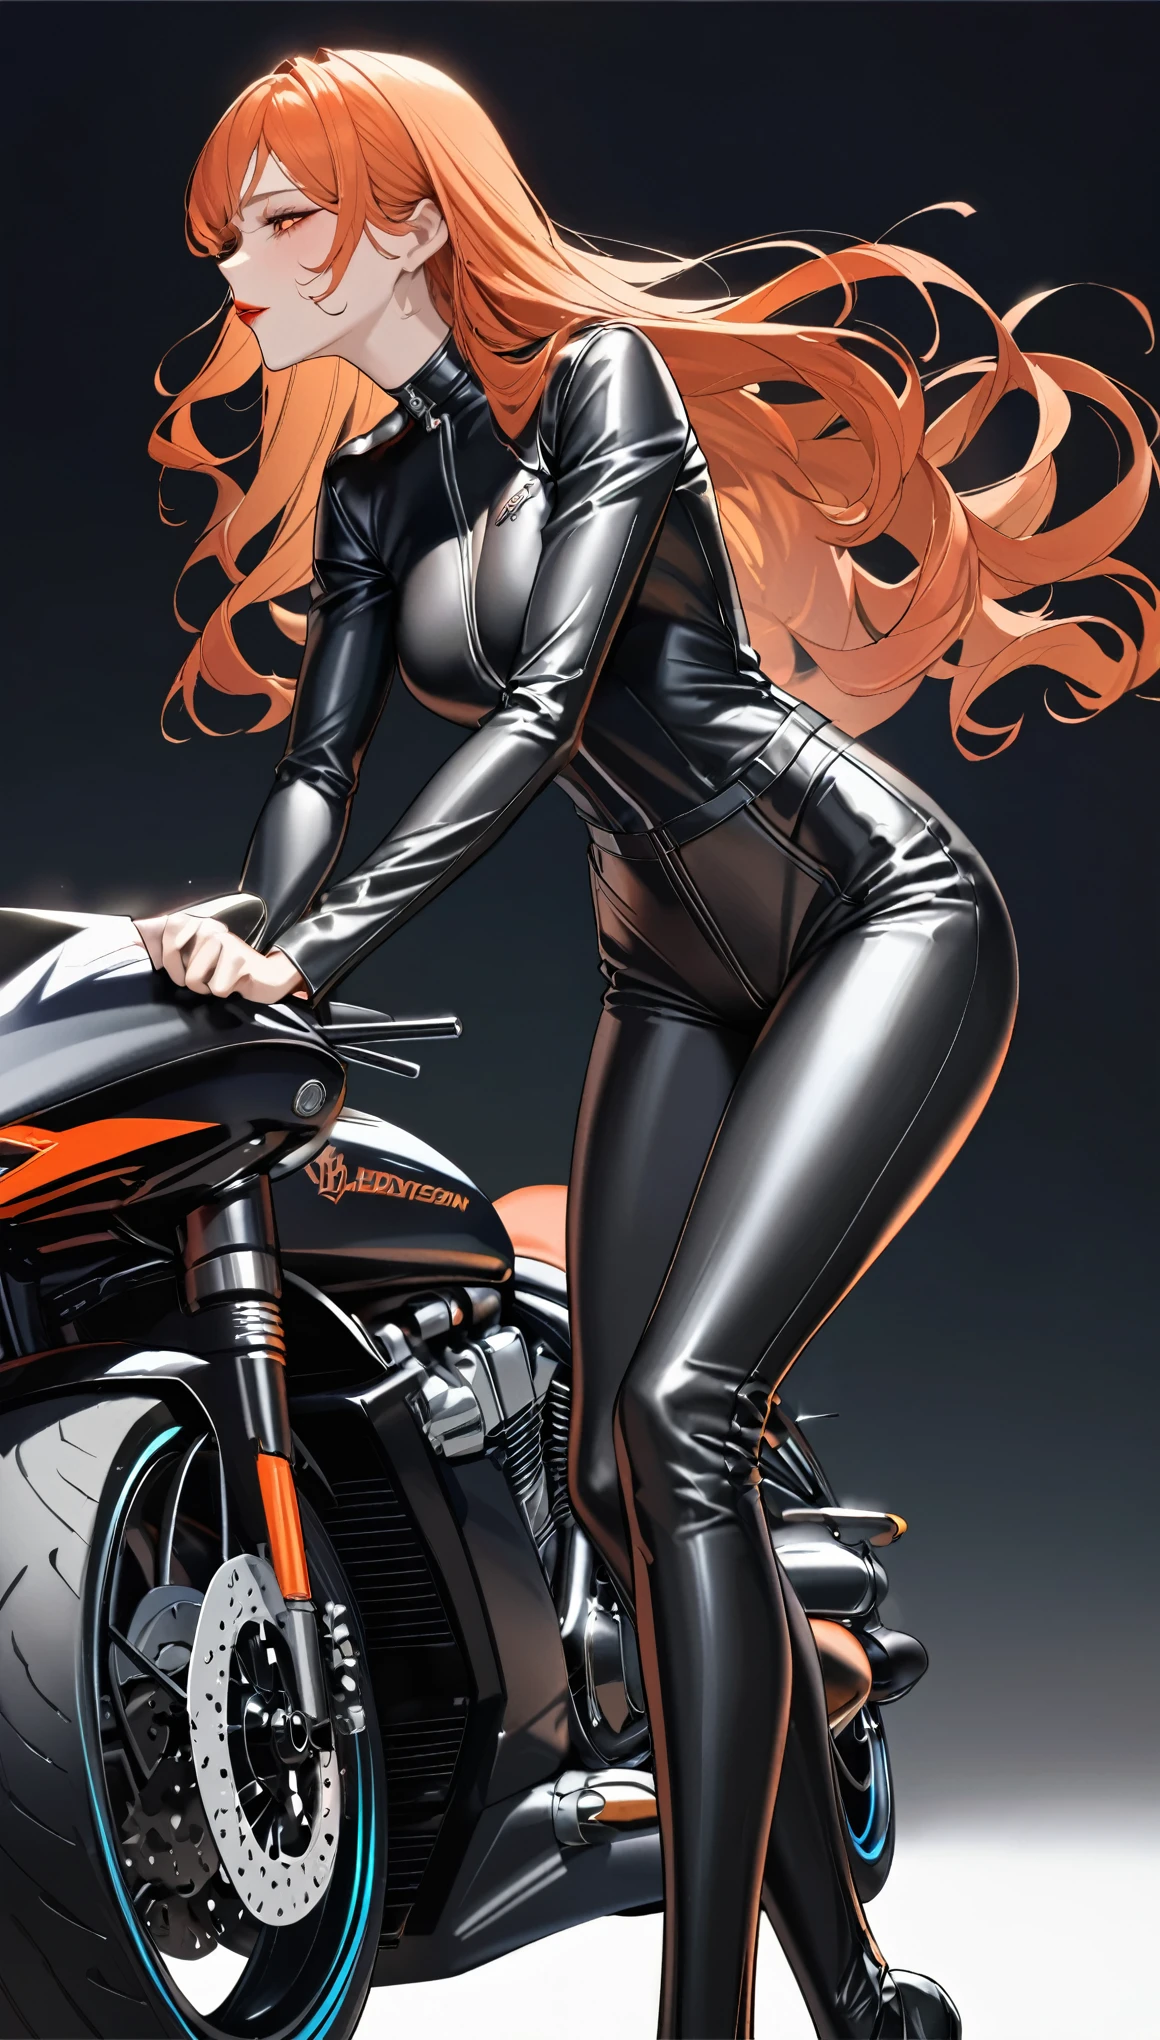 最高品質, 超上質, 16K, 信じられないほど不条理な, 非常に詳細な, 繊細でダイナミック, クールで美しい可愛い女性, オレンジ色のウェーブヘア, 真っ赤な唇, 魅惑的な表情, 興奮した表情, 最高の体型, 高い, フィットしたバイク用黒革ジャンプスーツを着用, 美しいポーズ, ハーレーダビッドソン